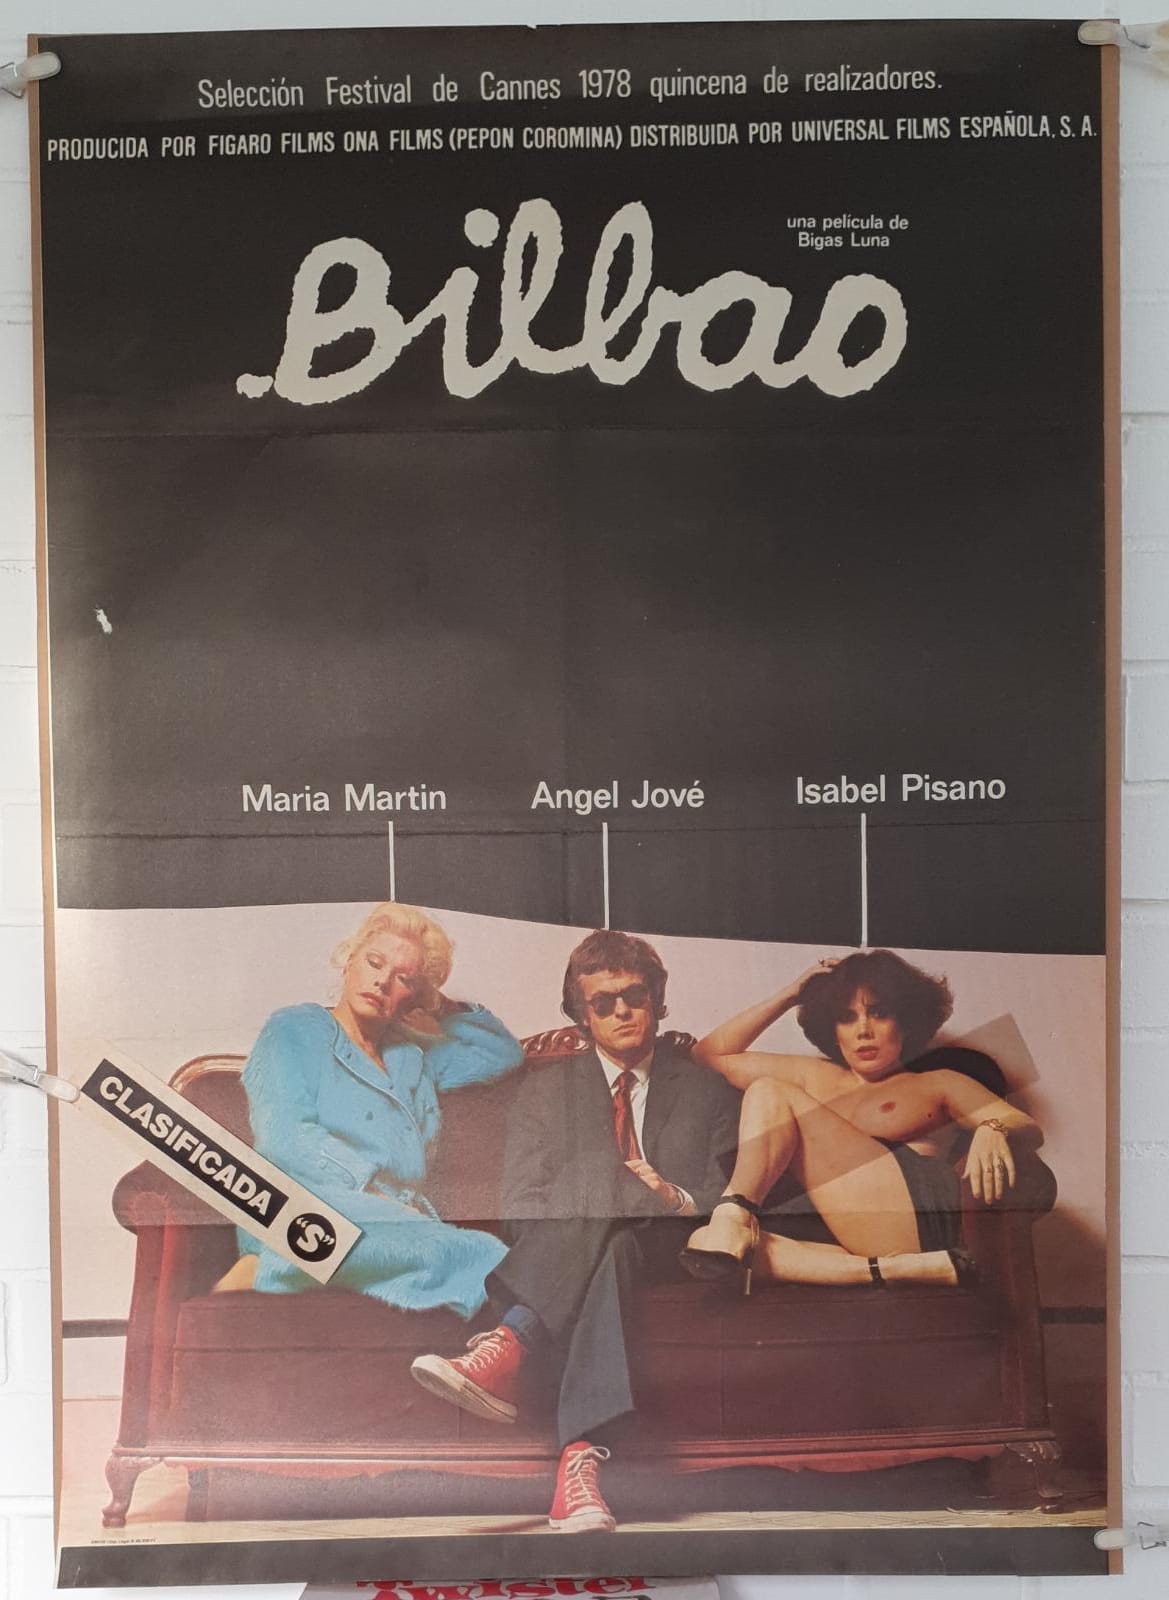 Bilbao de Bigas Luna. Cartel (100x70) de Estreno, 1977